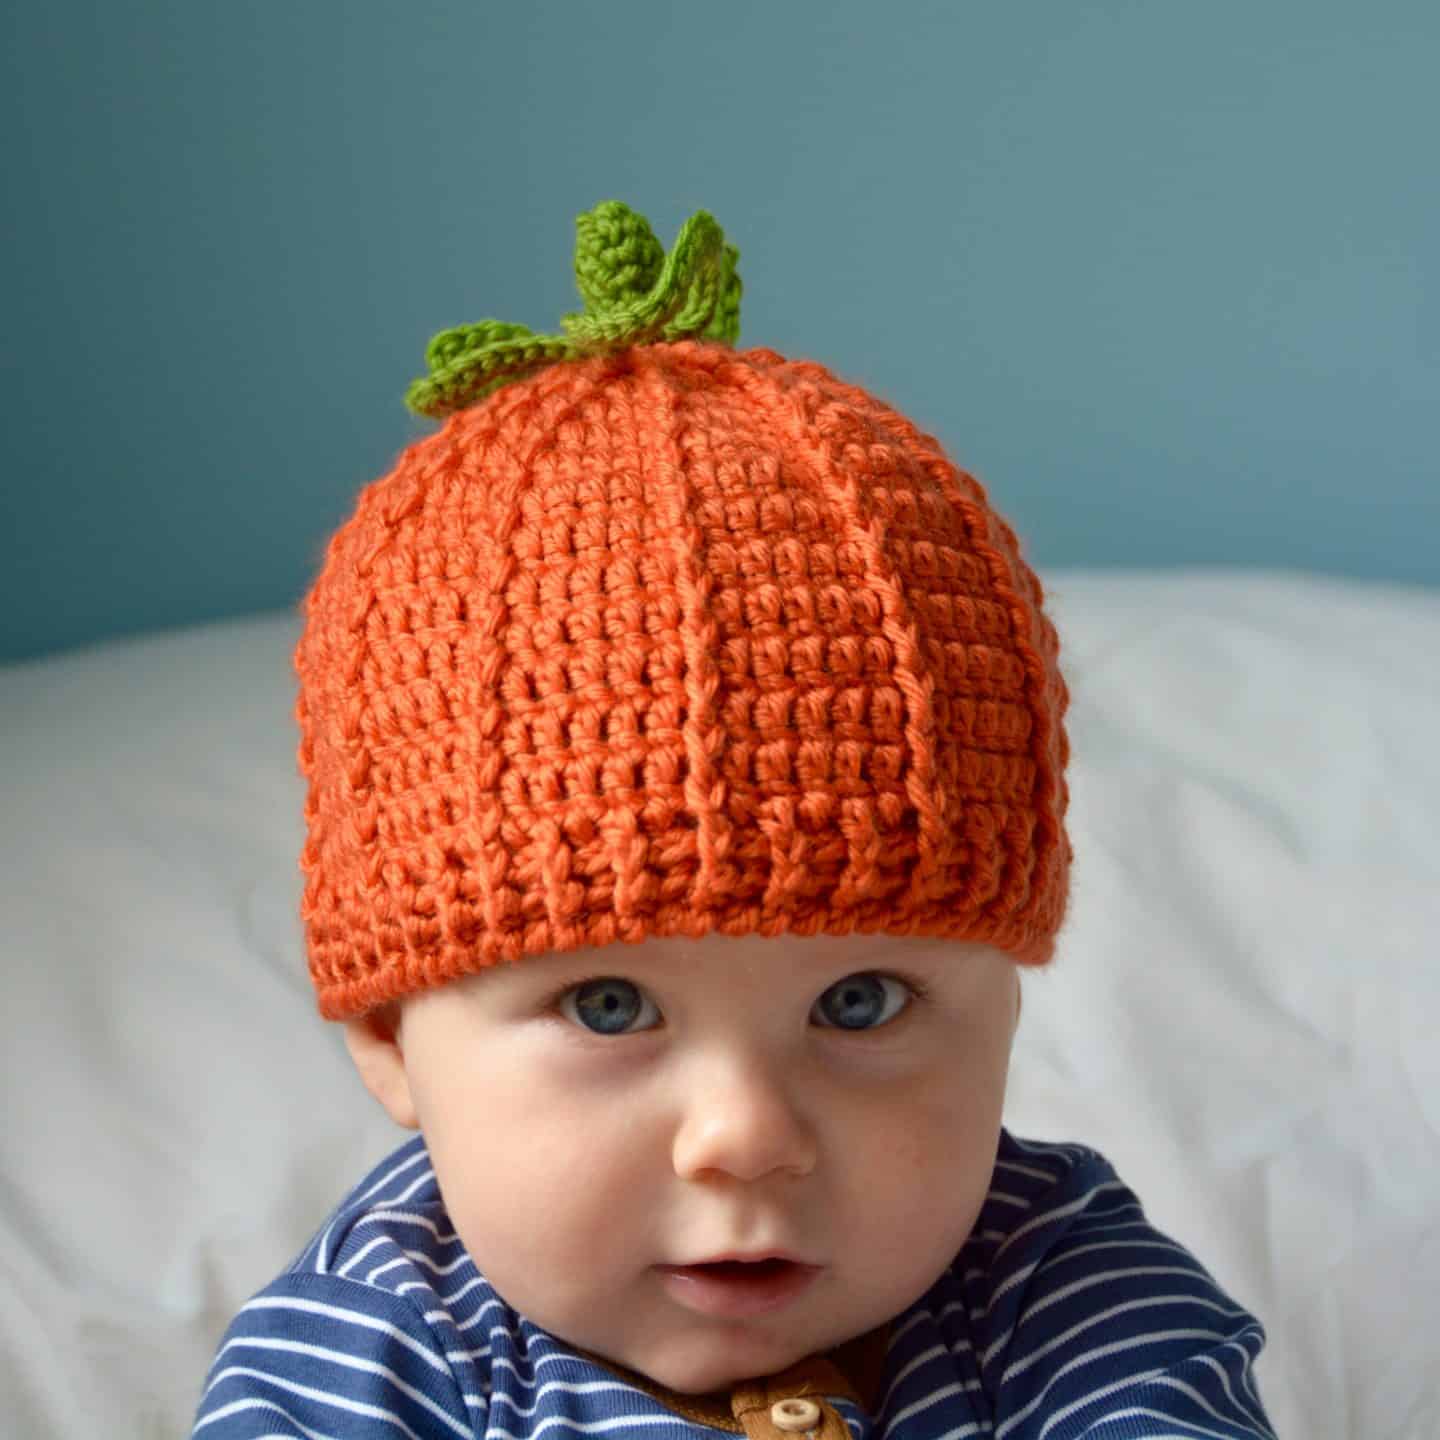 Pumpkin beanie hat free crochet pattern by HanJan Crochet 